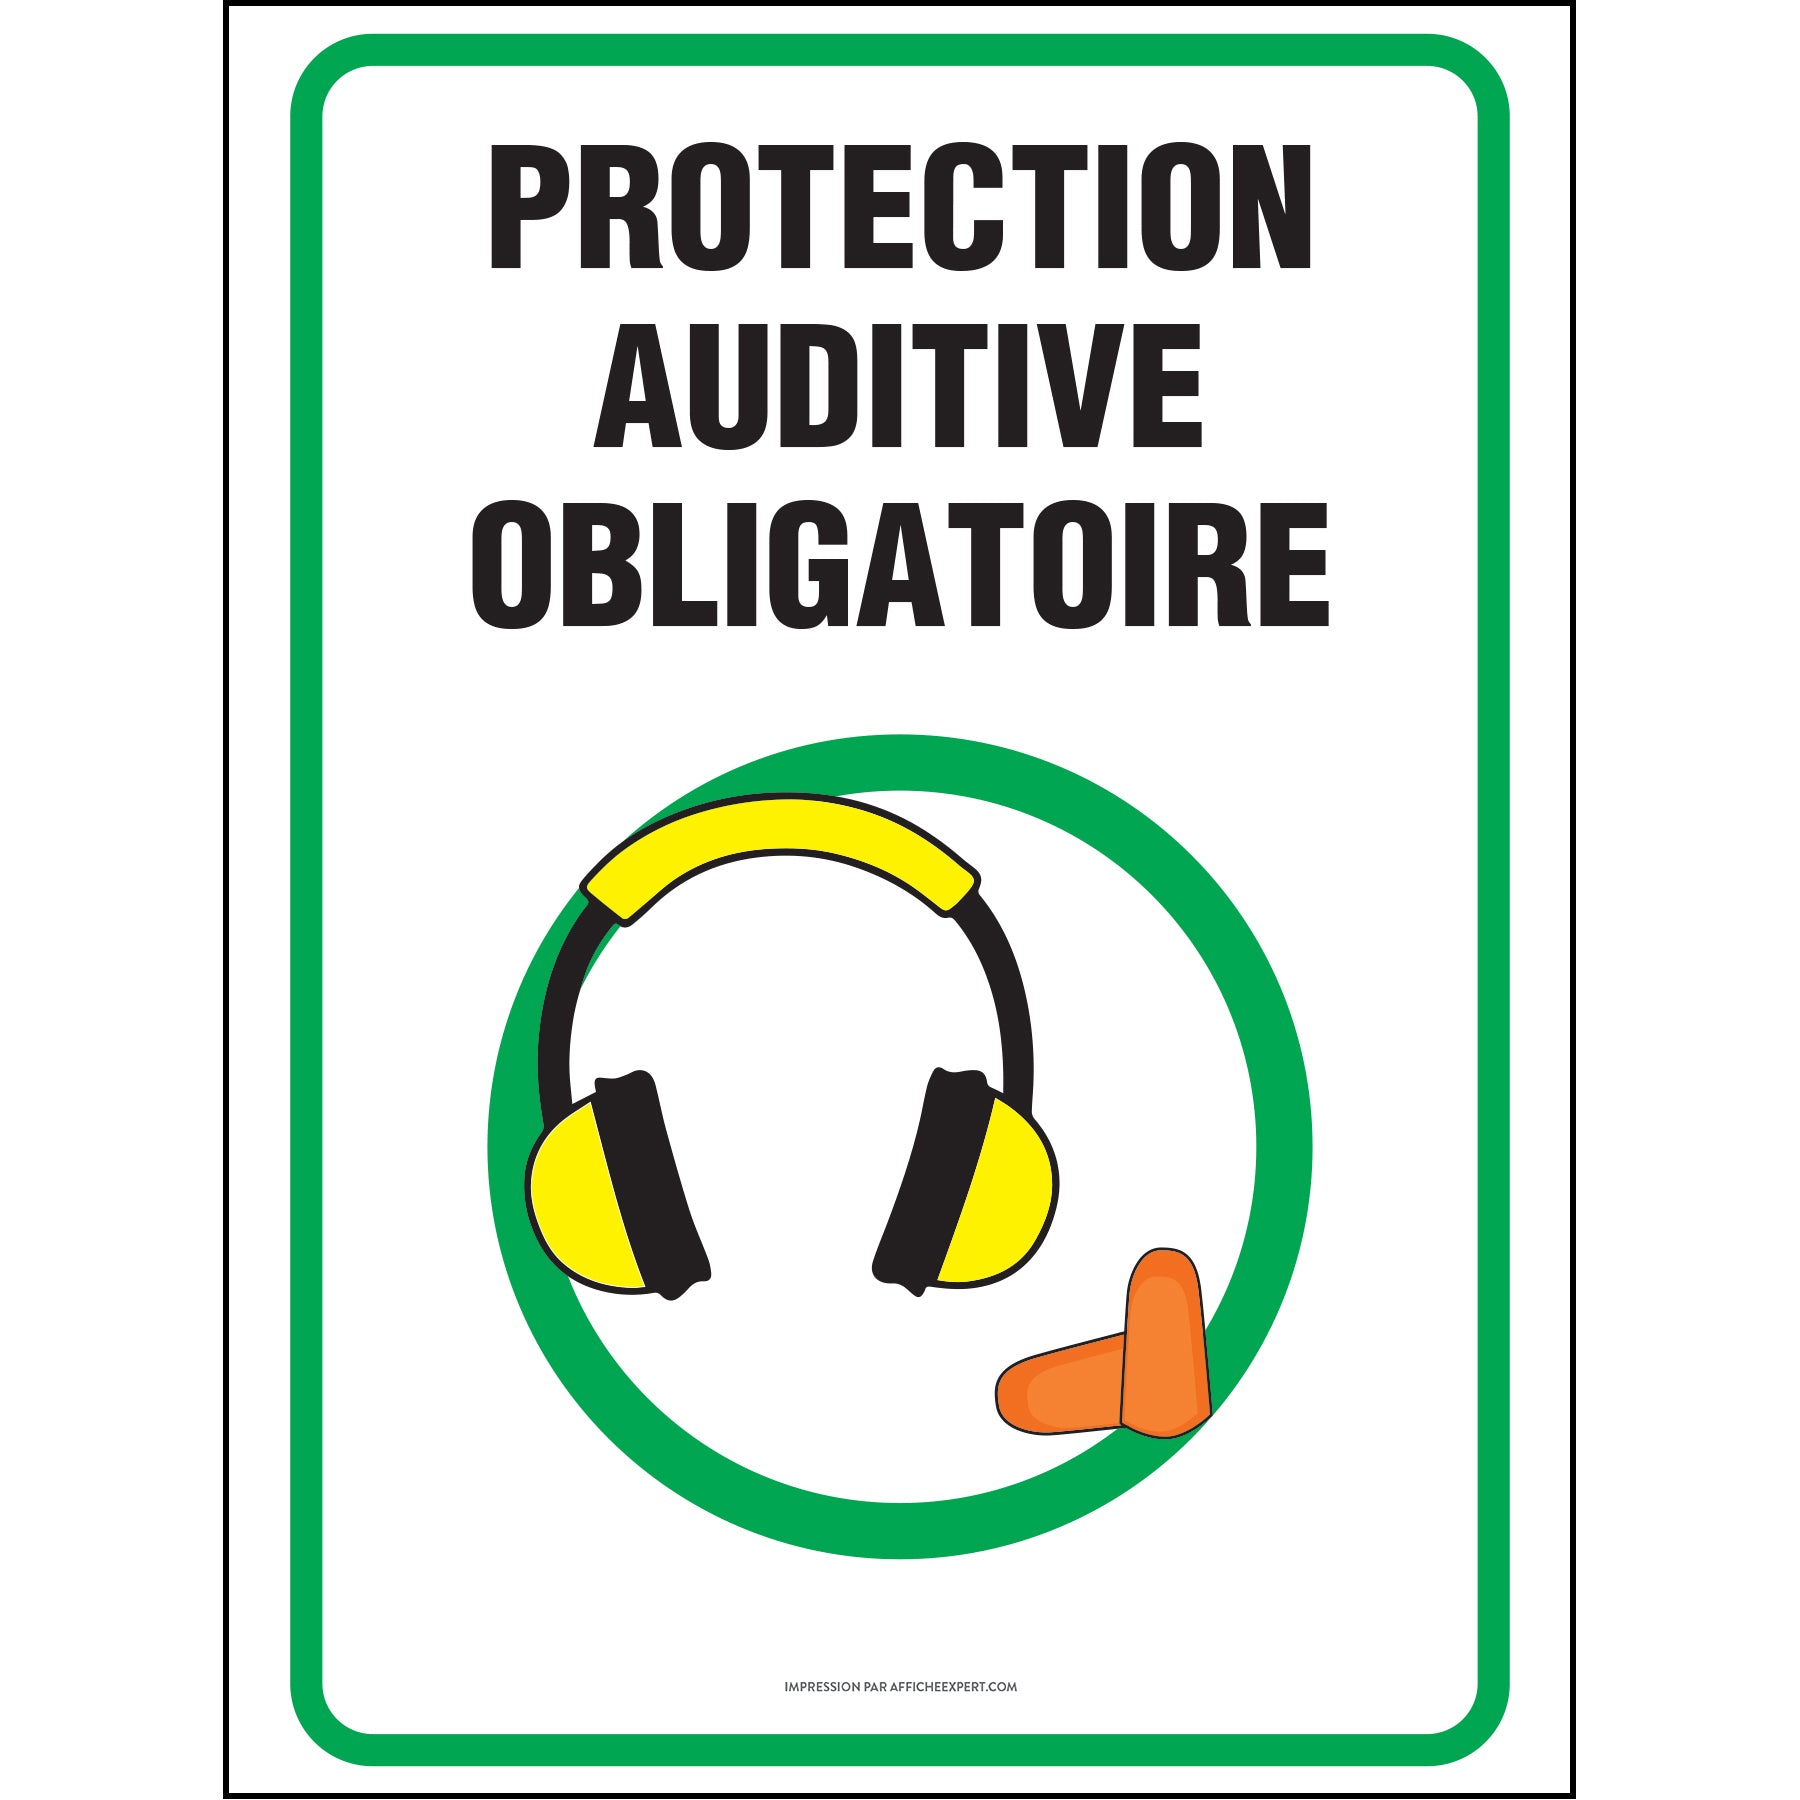 Affiche de sécurité: ATTENTION Protection auditive requise lorsque